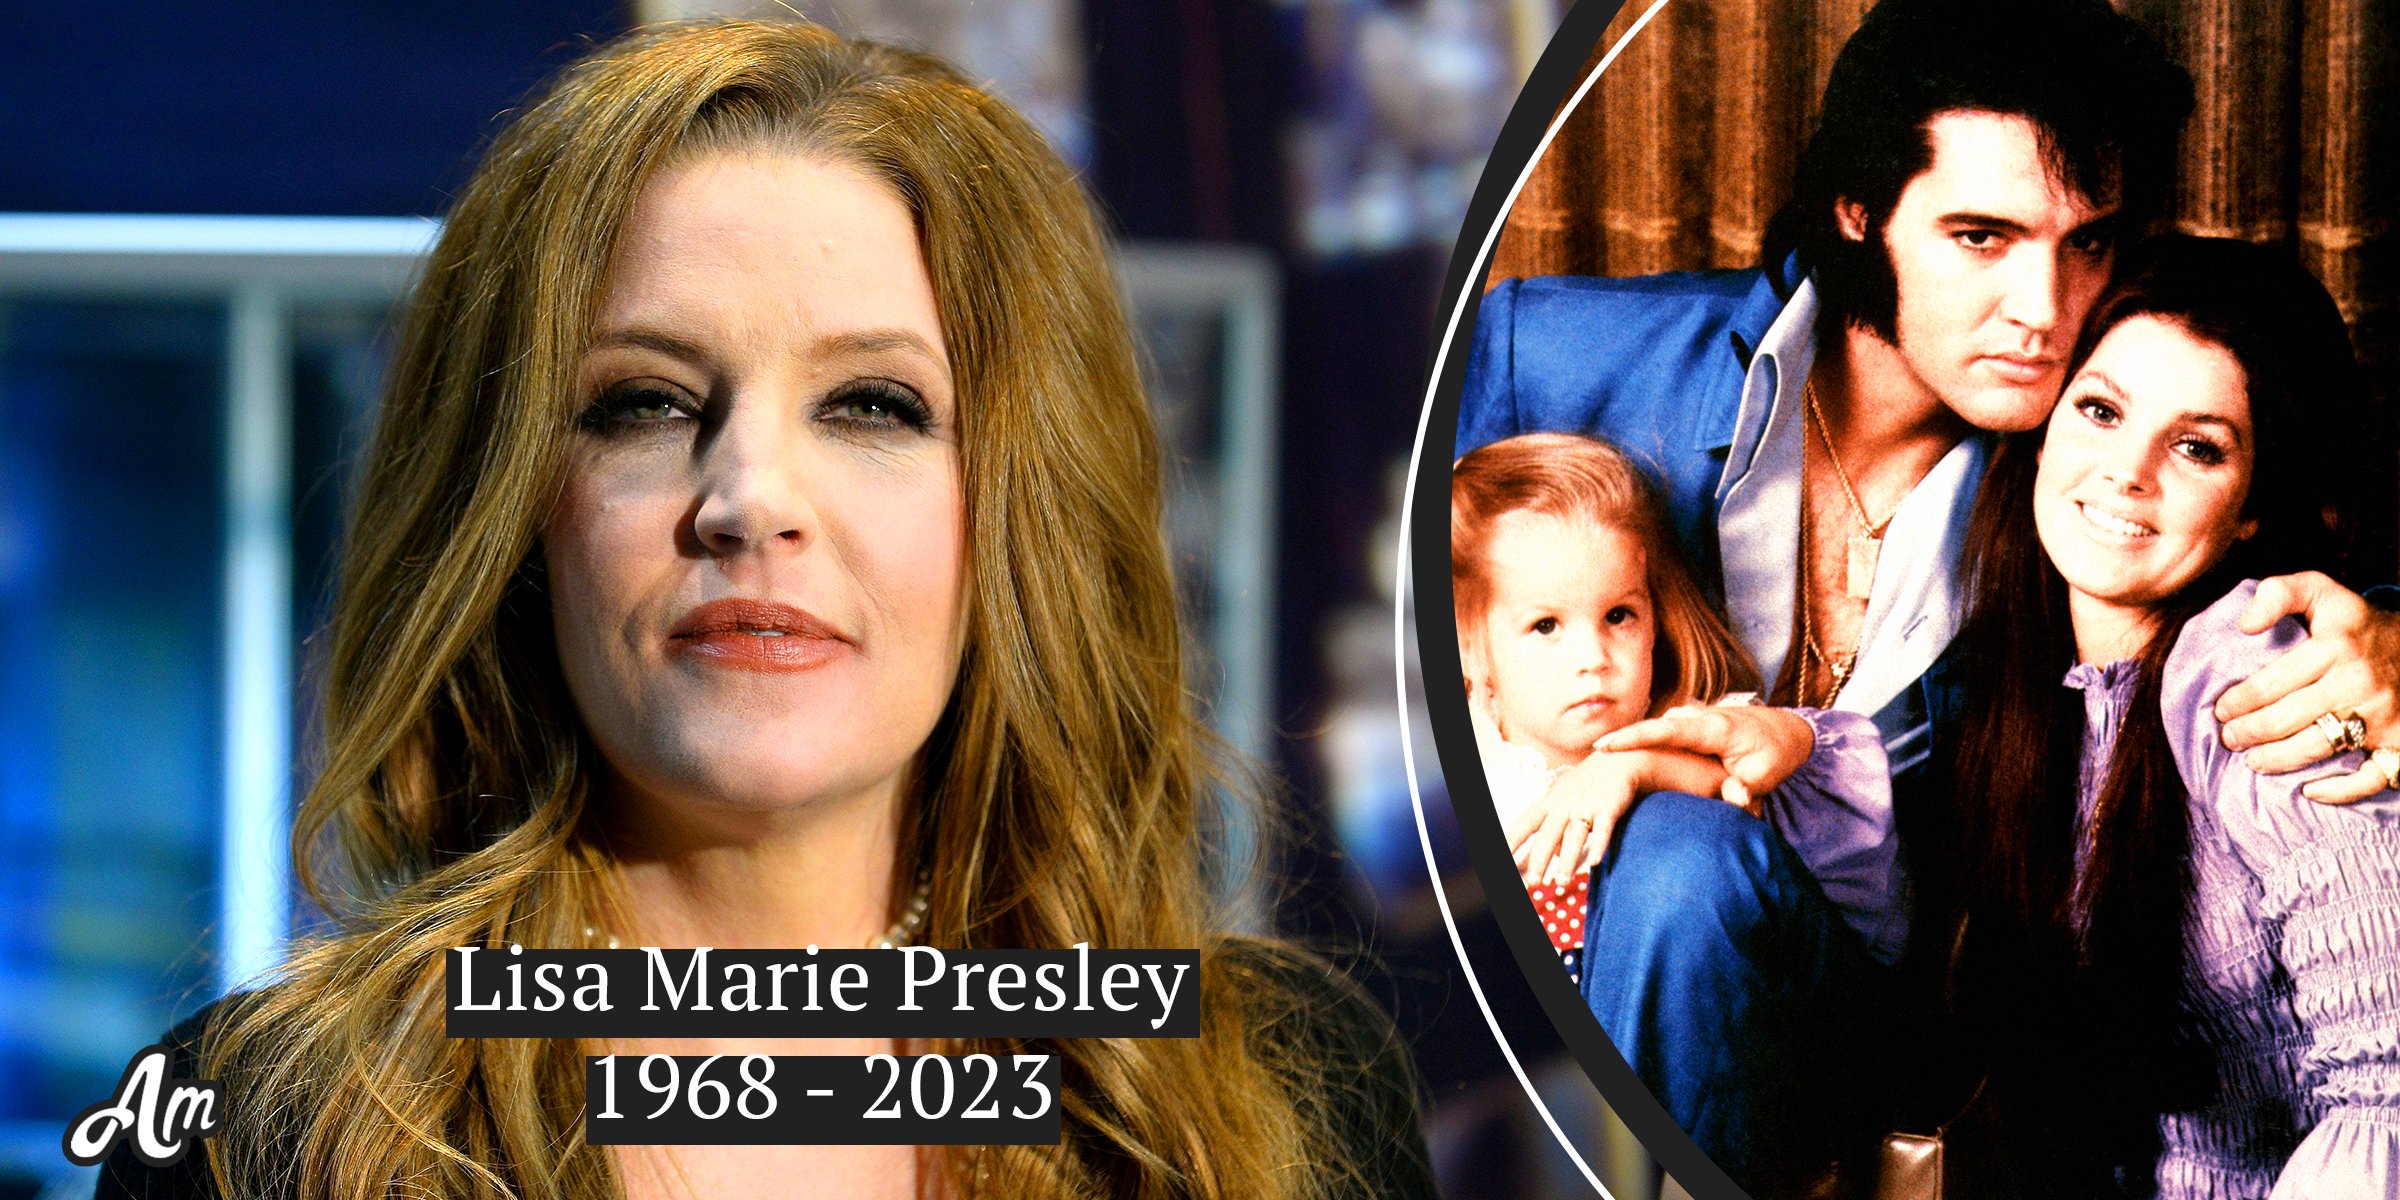 La fille d’Elvis, Lisa Marie Presley, est décédée à 54 ans, sa mère et sa fille étaient à son chevet